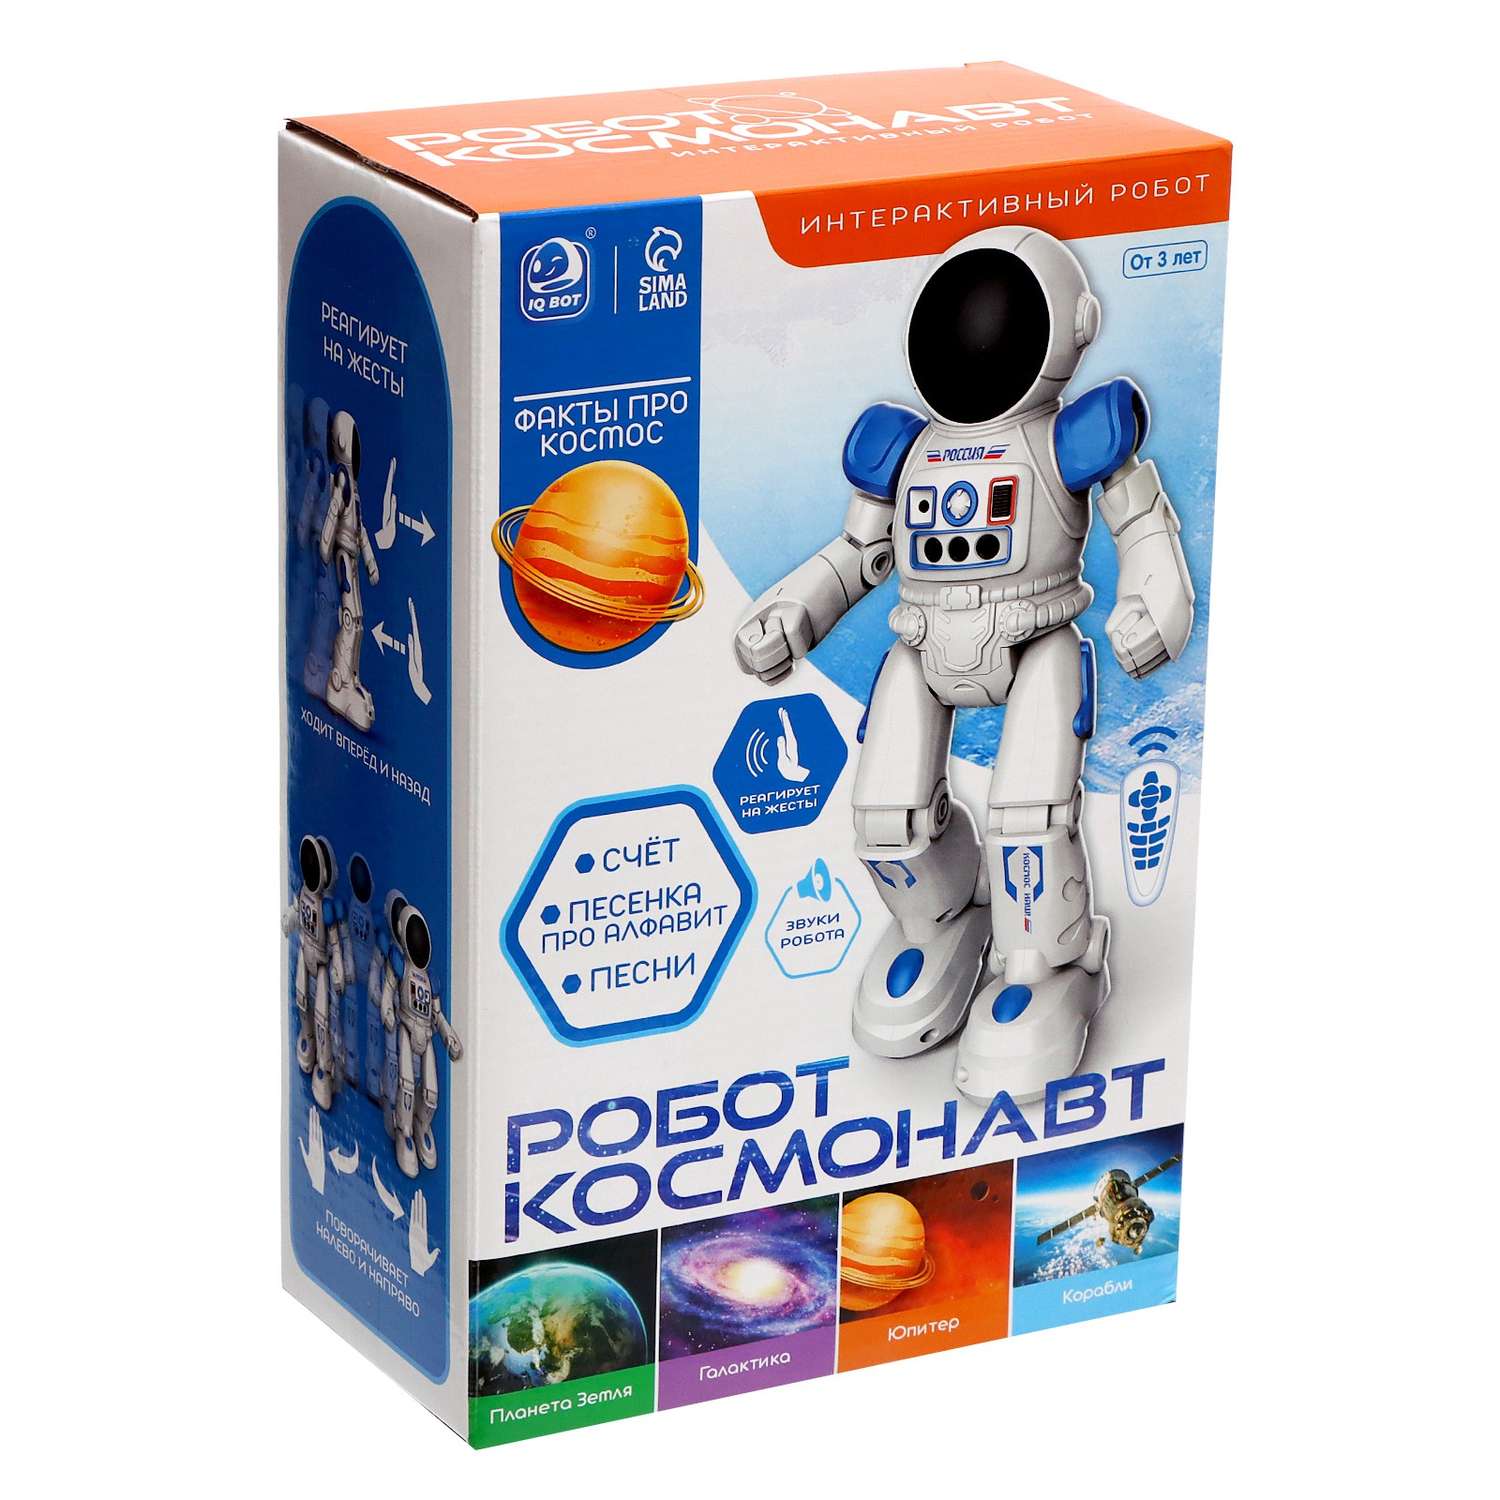 Робот игрушка Автоград радиоуправляемый «Космонавт» интерактивный русское озвучивание управление жестами - фото 10